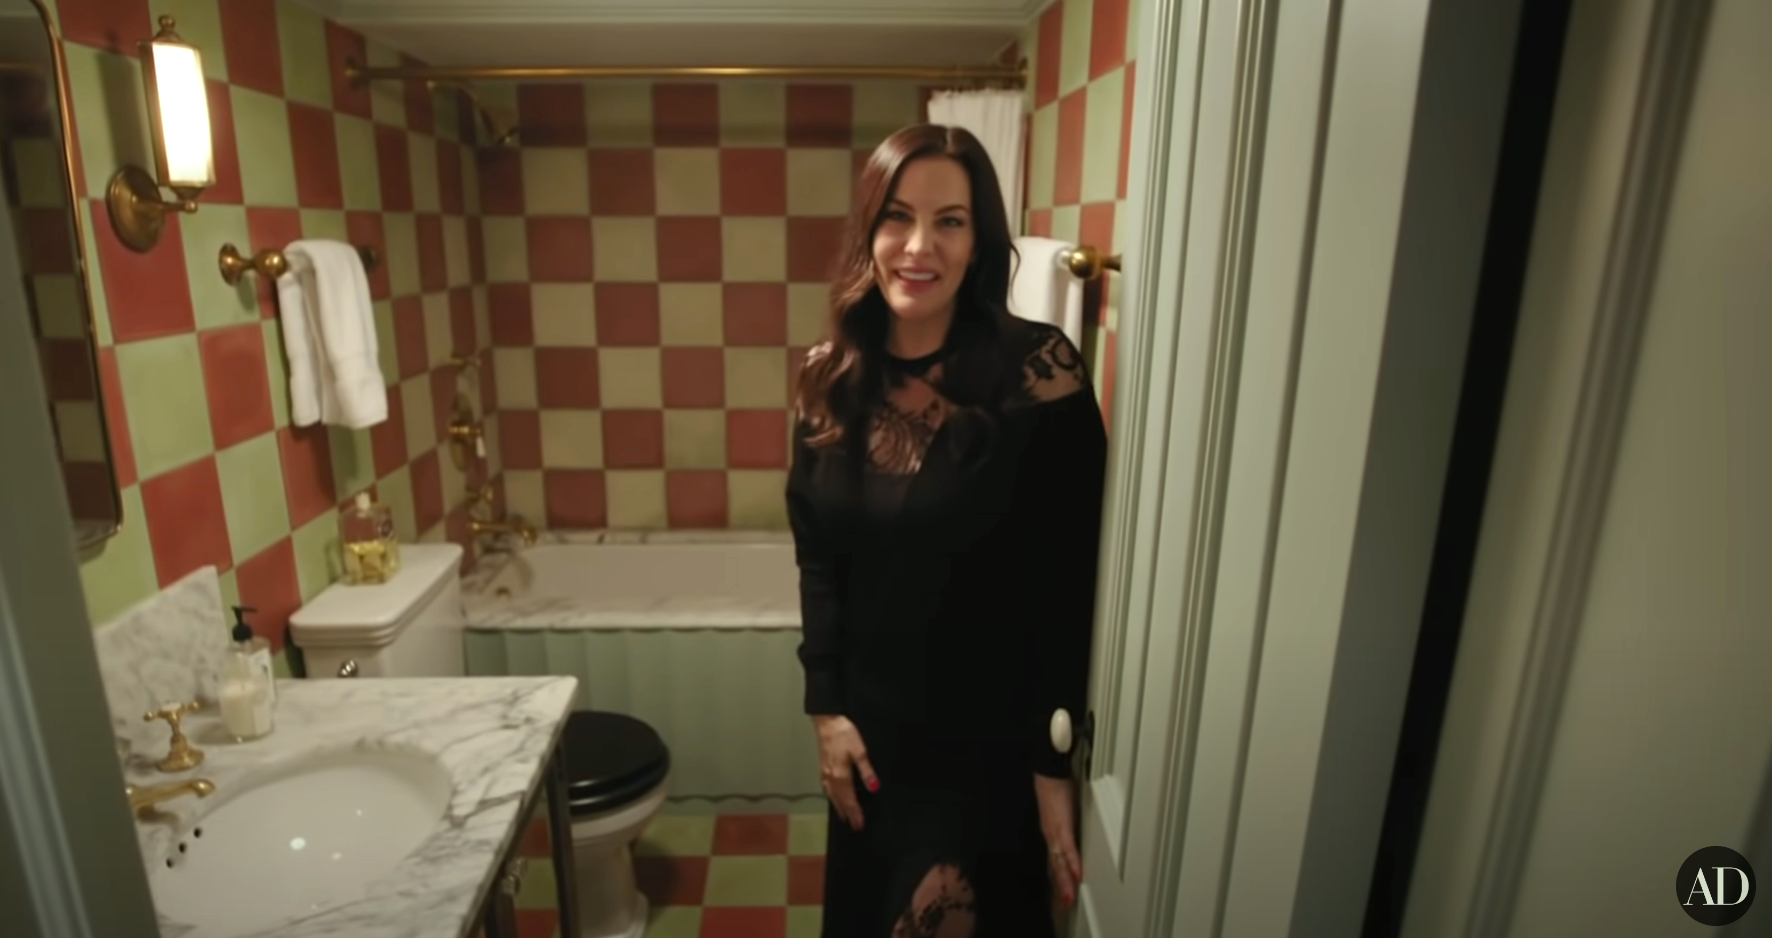 Liv Tyler in her bathroom